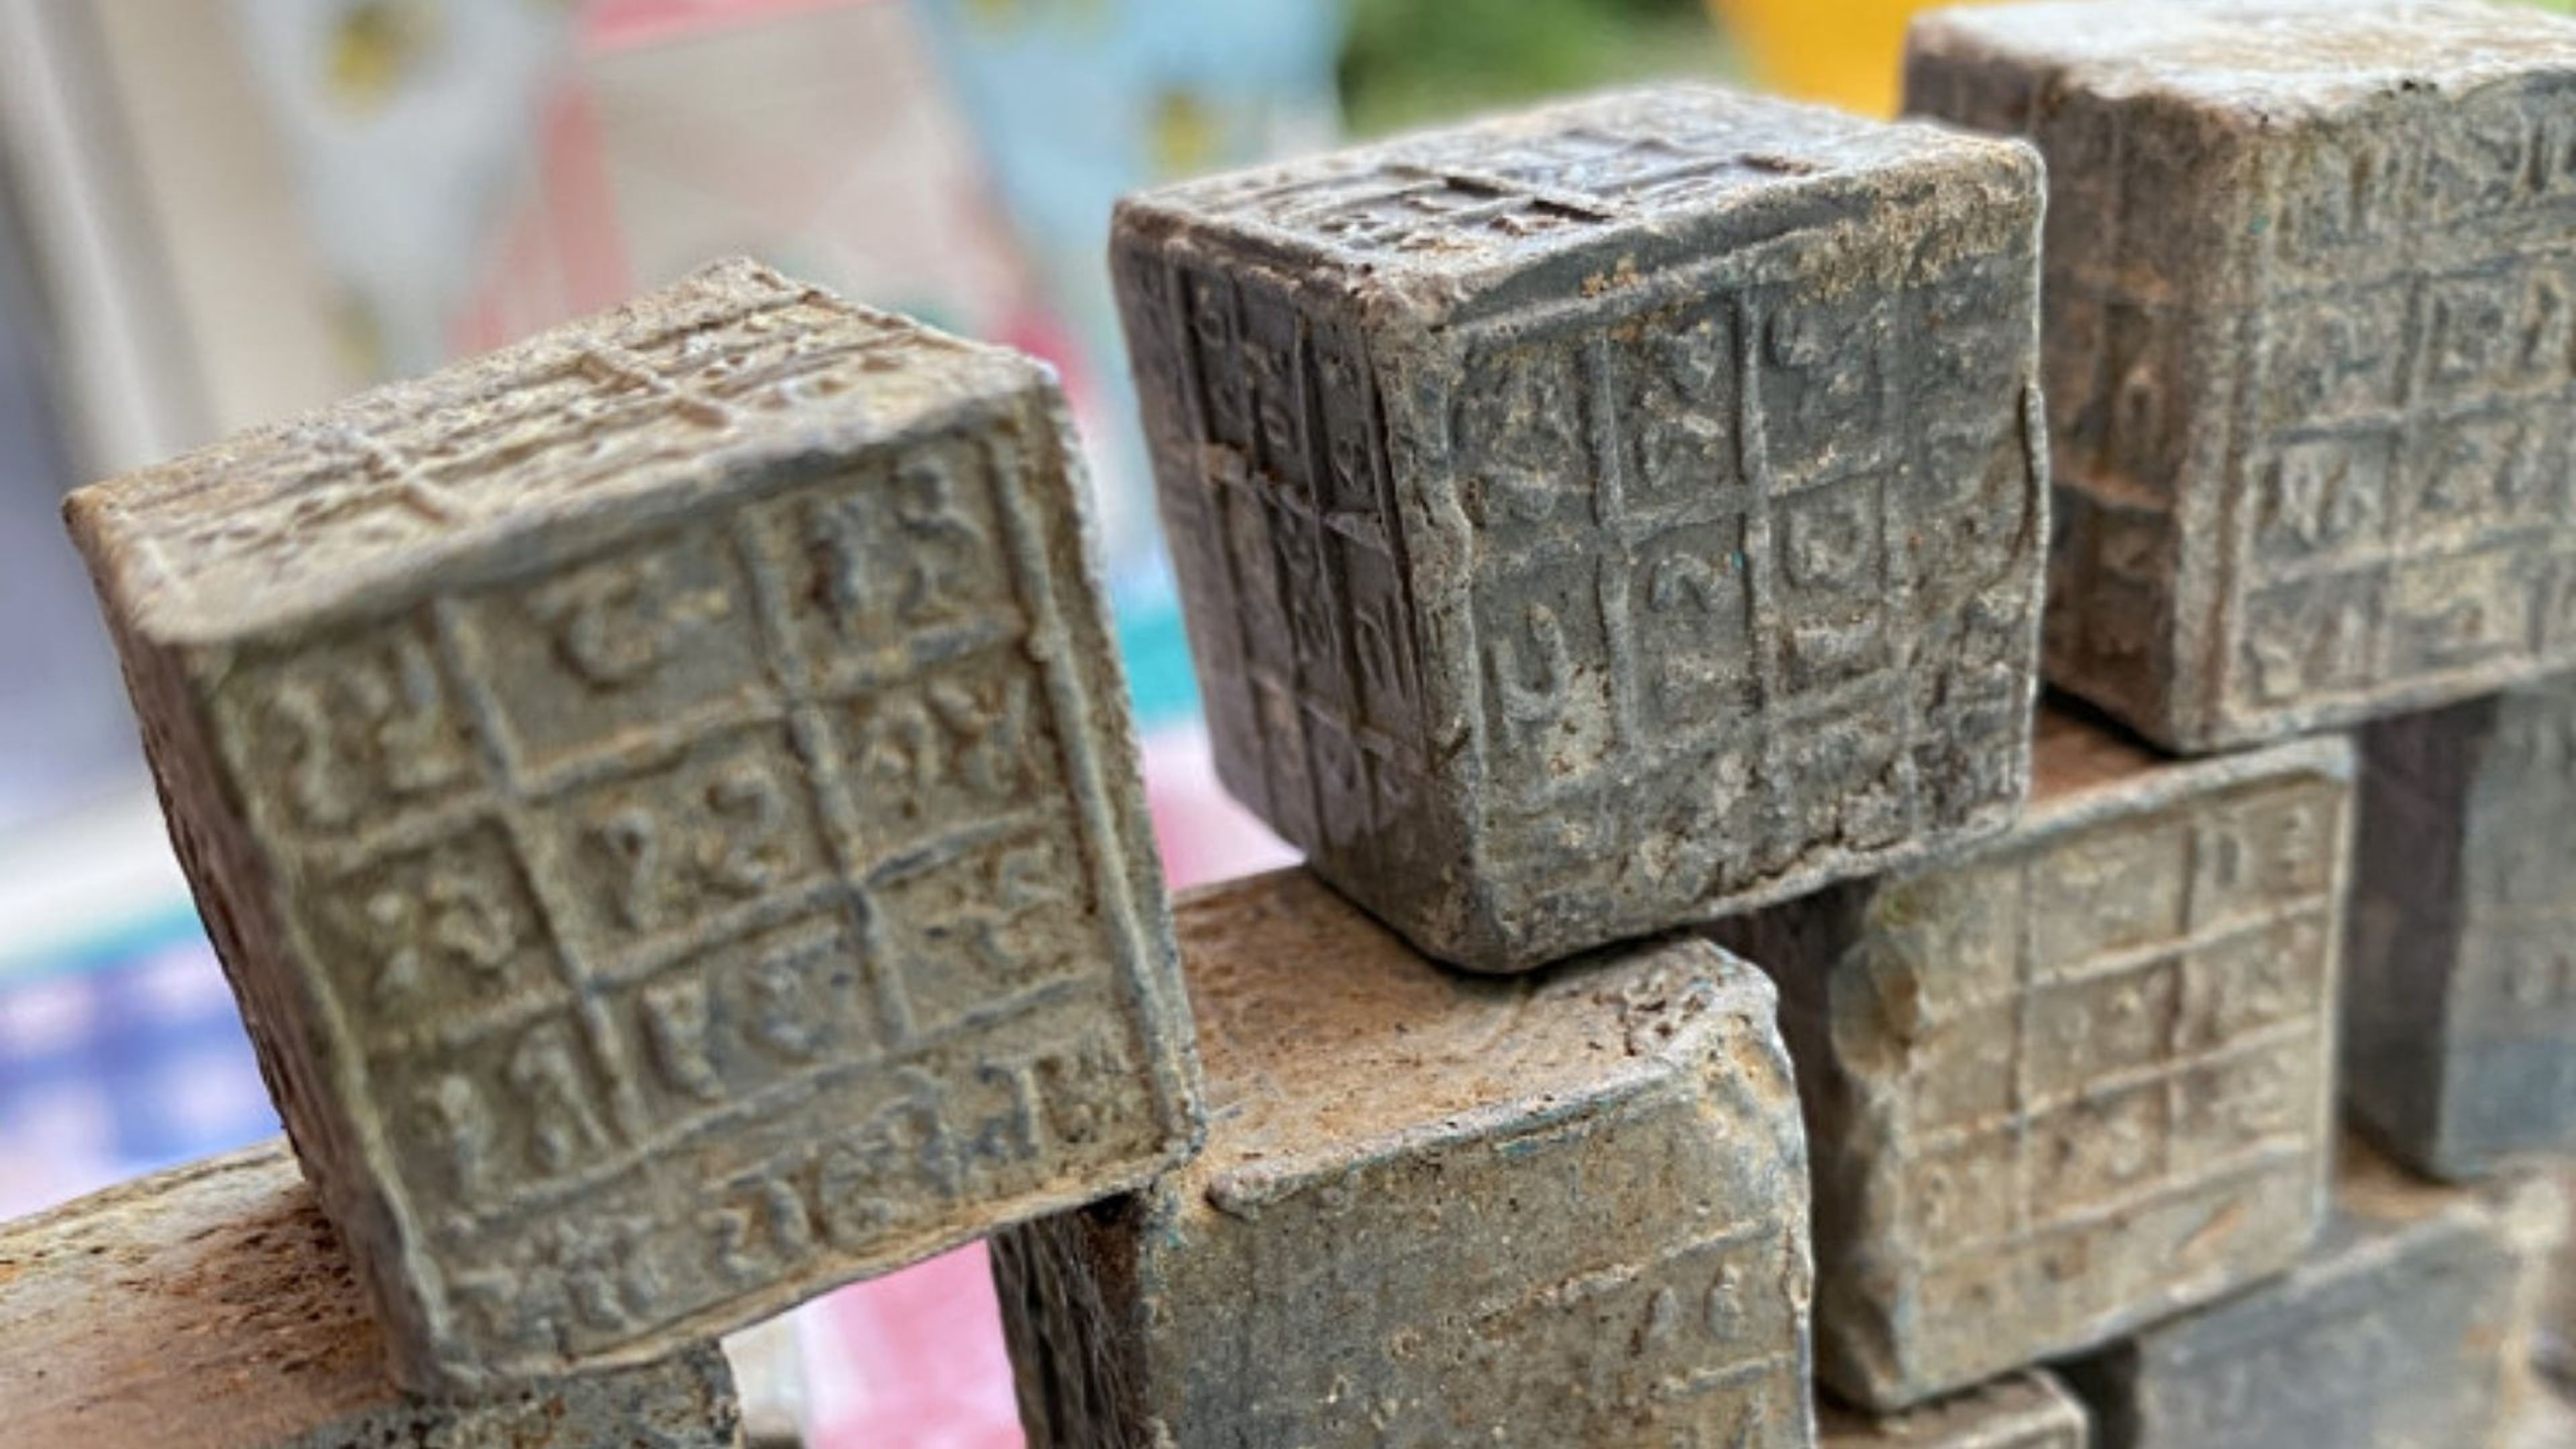 cubos de plomo llenos de inscripciones en sánscrito